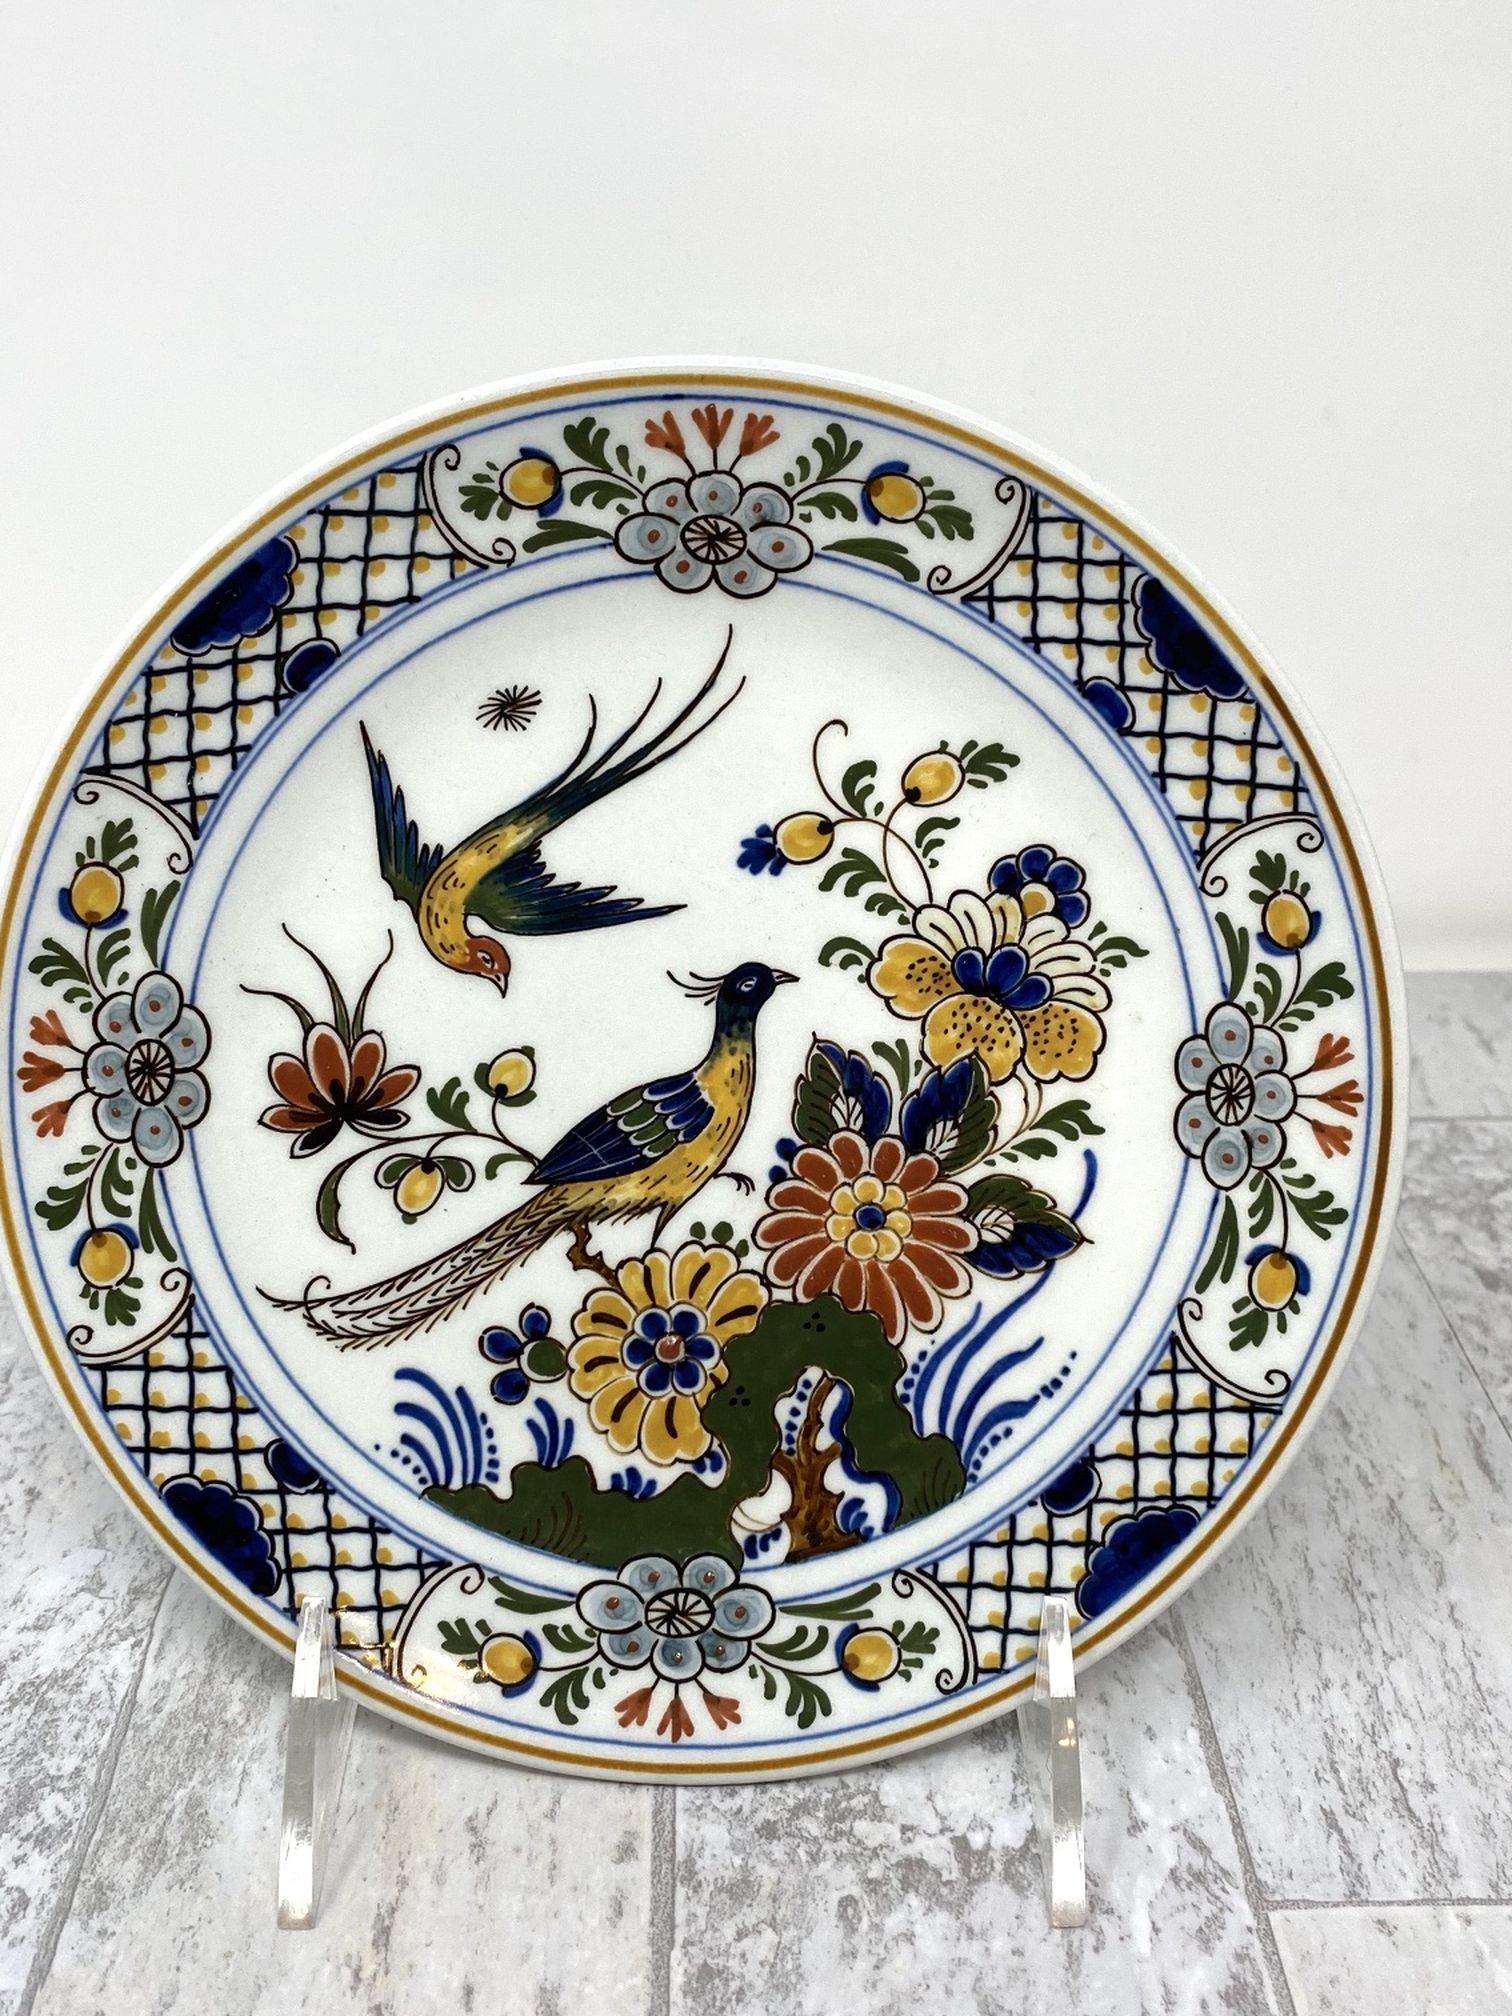 7” Royal Delft Koninklijke Porceleyne Fles Plate